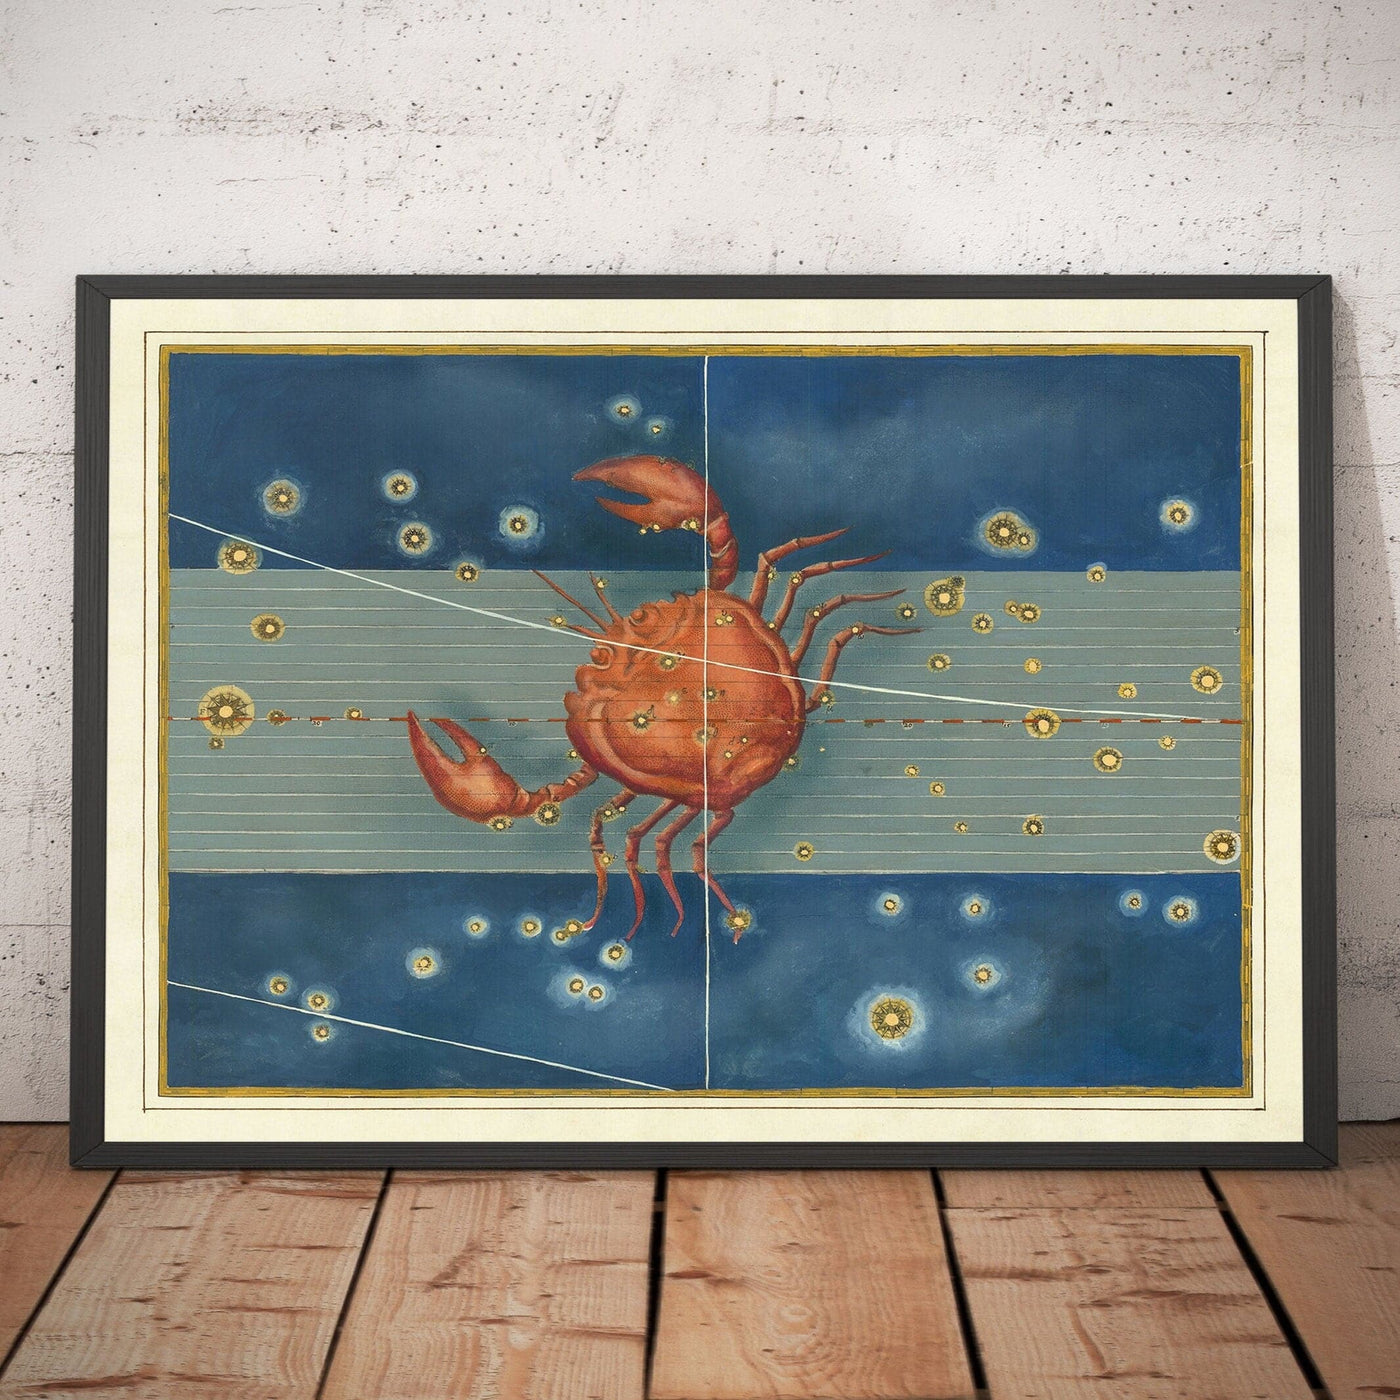 Alte Sternkarte von Krebs, 1603 von Johann Bayer - Zodiac Astrology Diagramm - Das Krabbenhoroskop -Zeichen